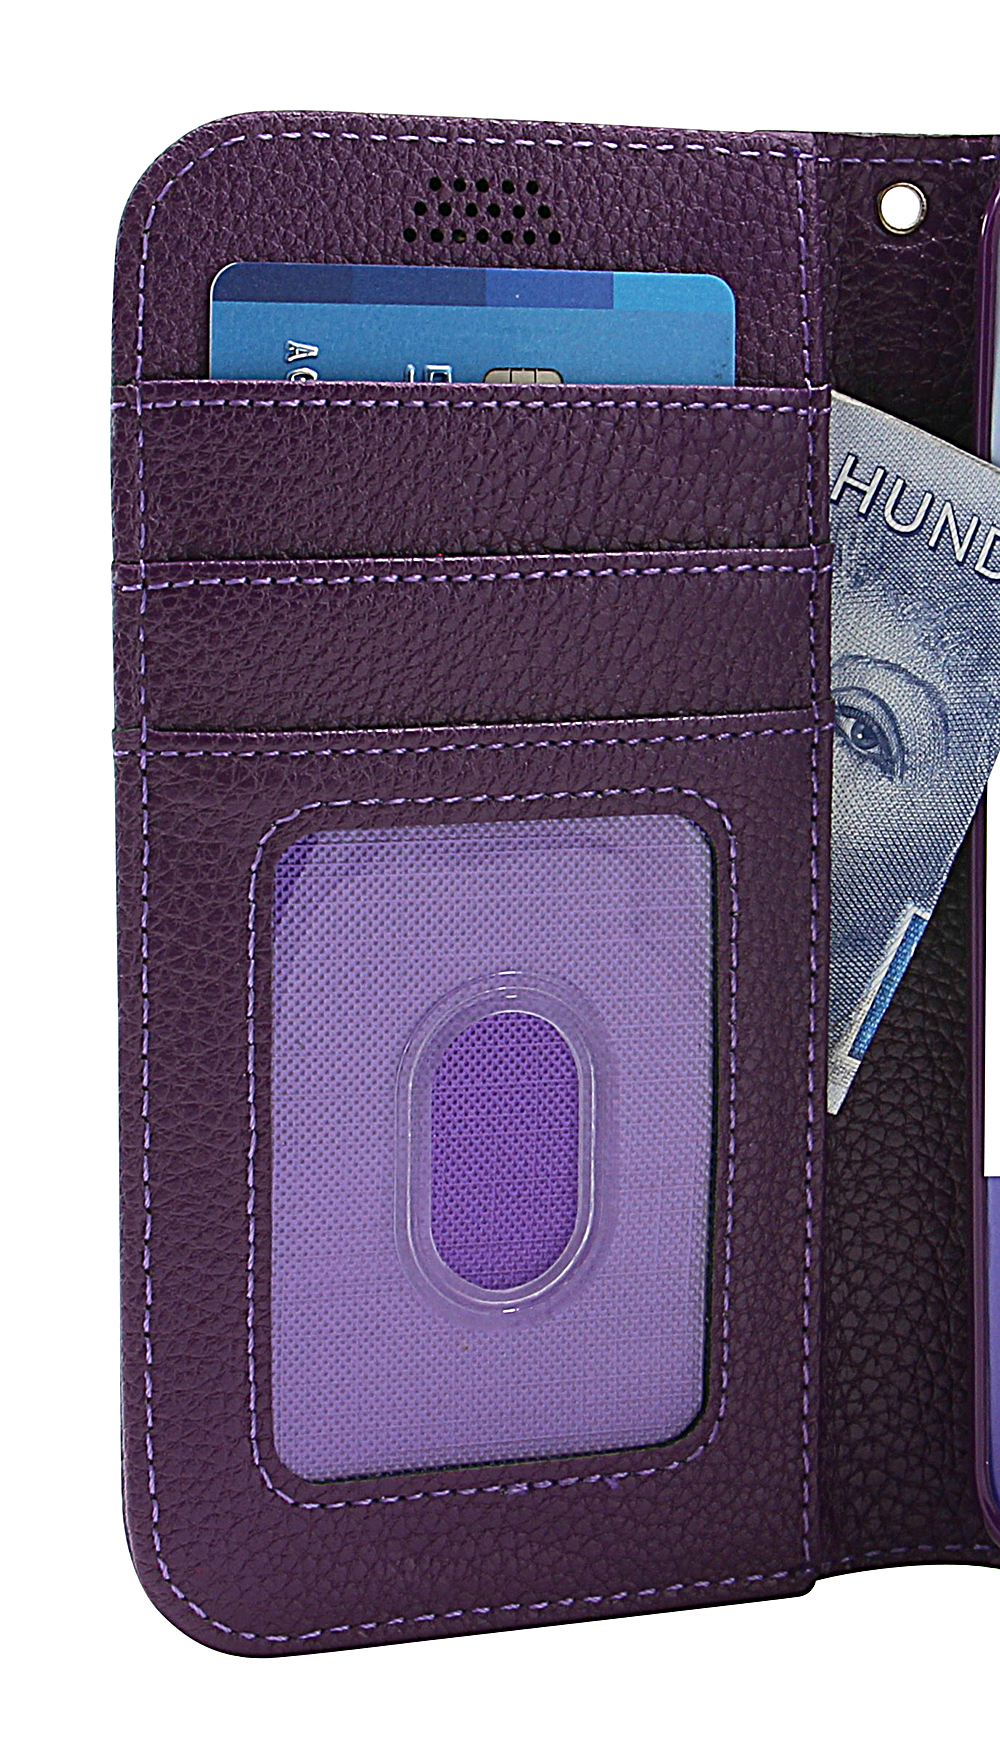 billigamobilskydd.seNew Standcase Wallet Motorola One